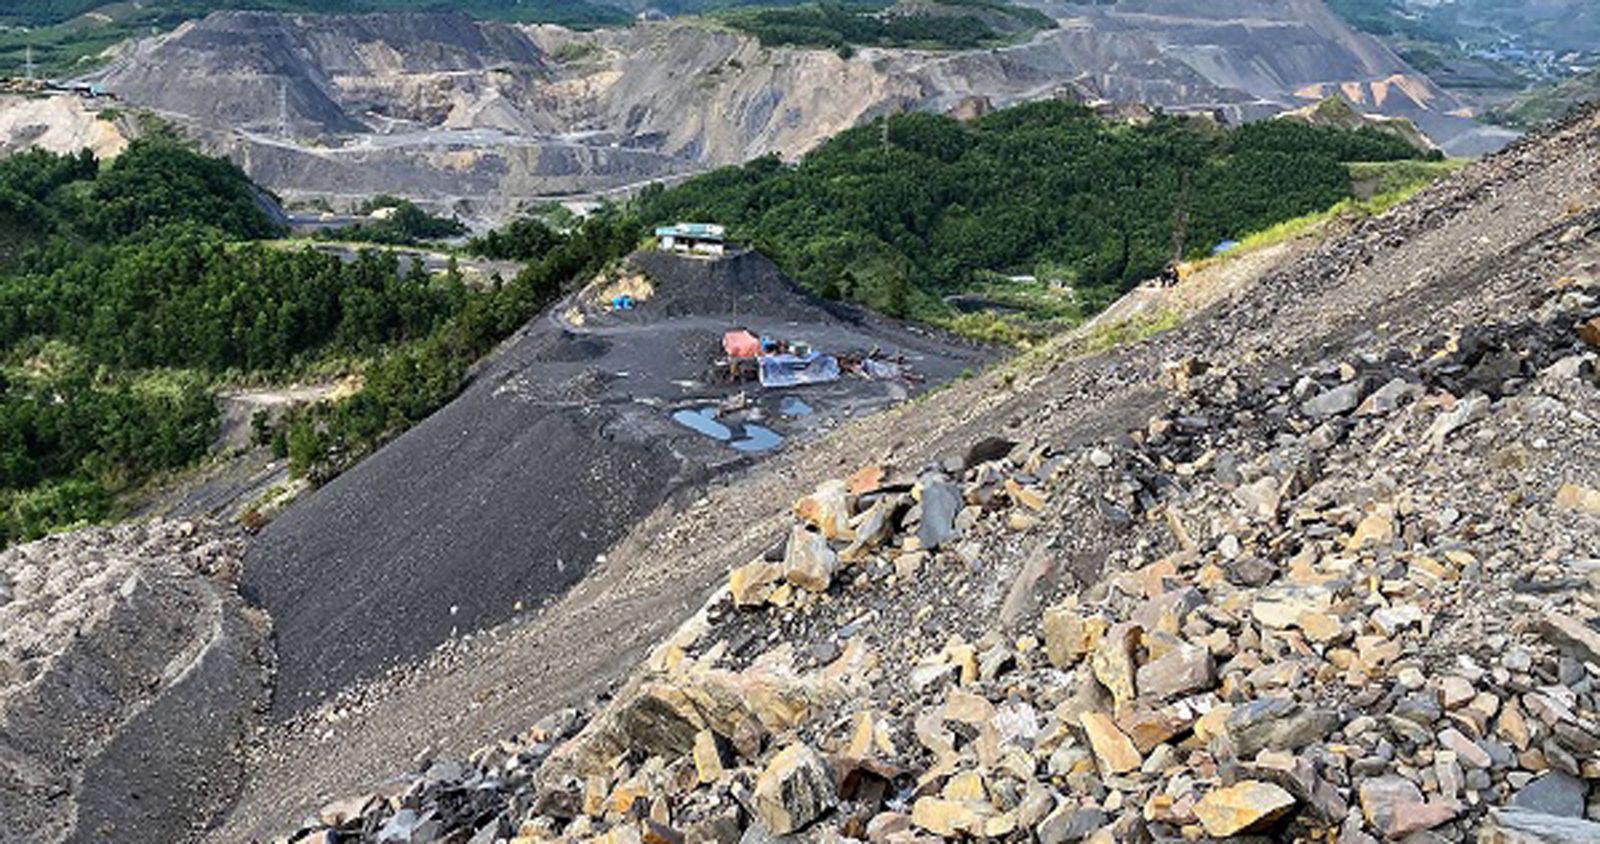  Đất đá thải của ngành than đang ngày một dư thừa, thậm chí còn gặp khó khăn trong việc đổ thải. Ảnh Lê Cường